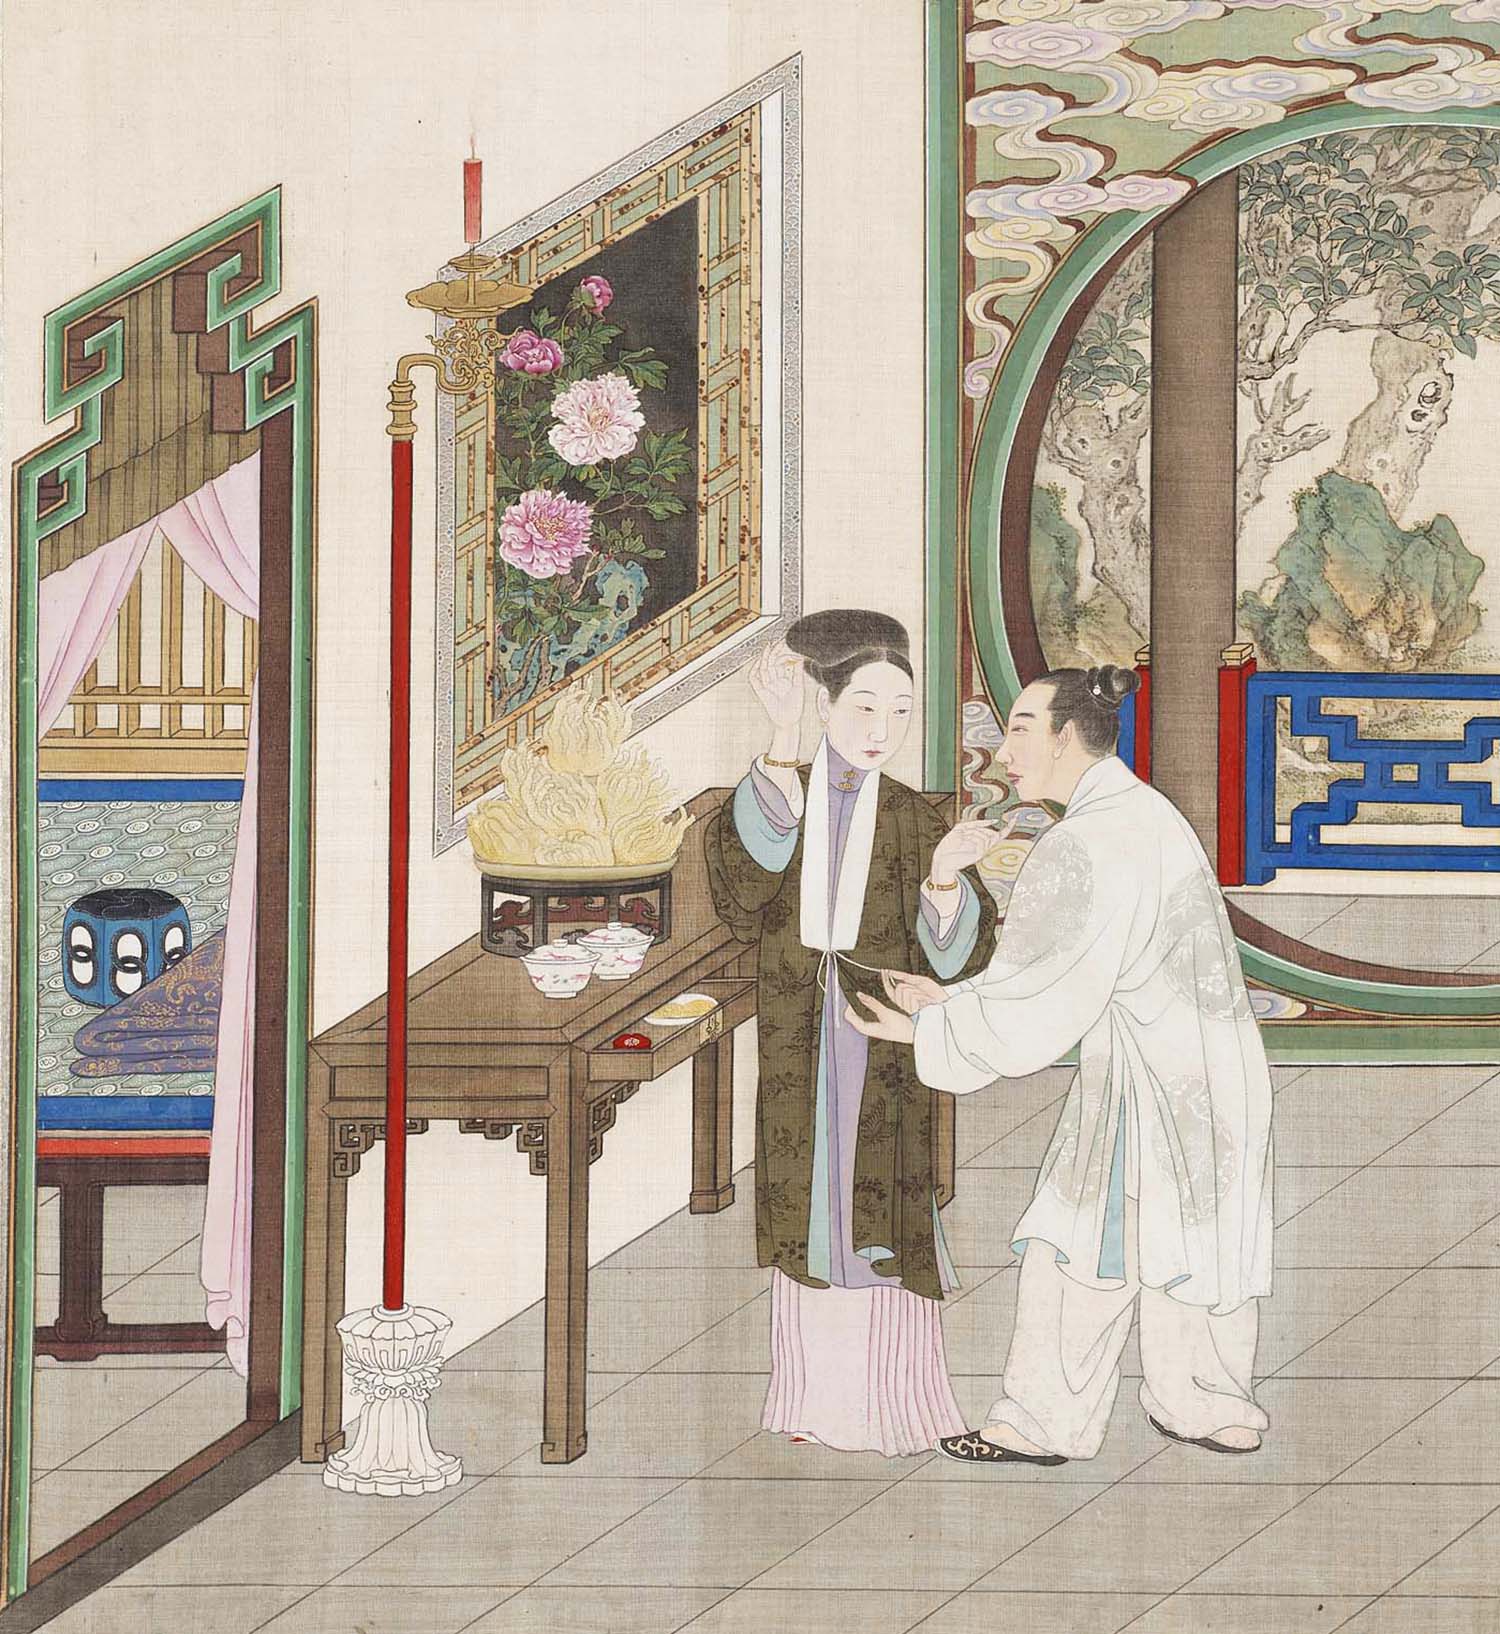 中国古代夫妻间的爱情,不仅相敬如宾,而且委婉动听